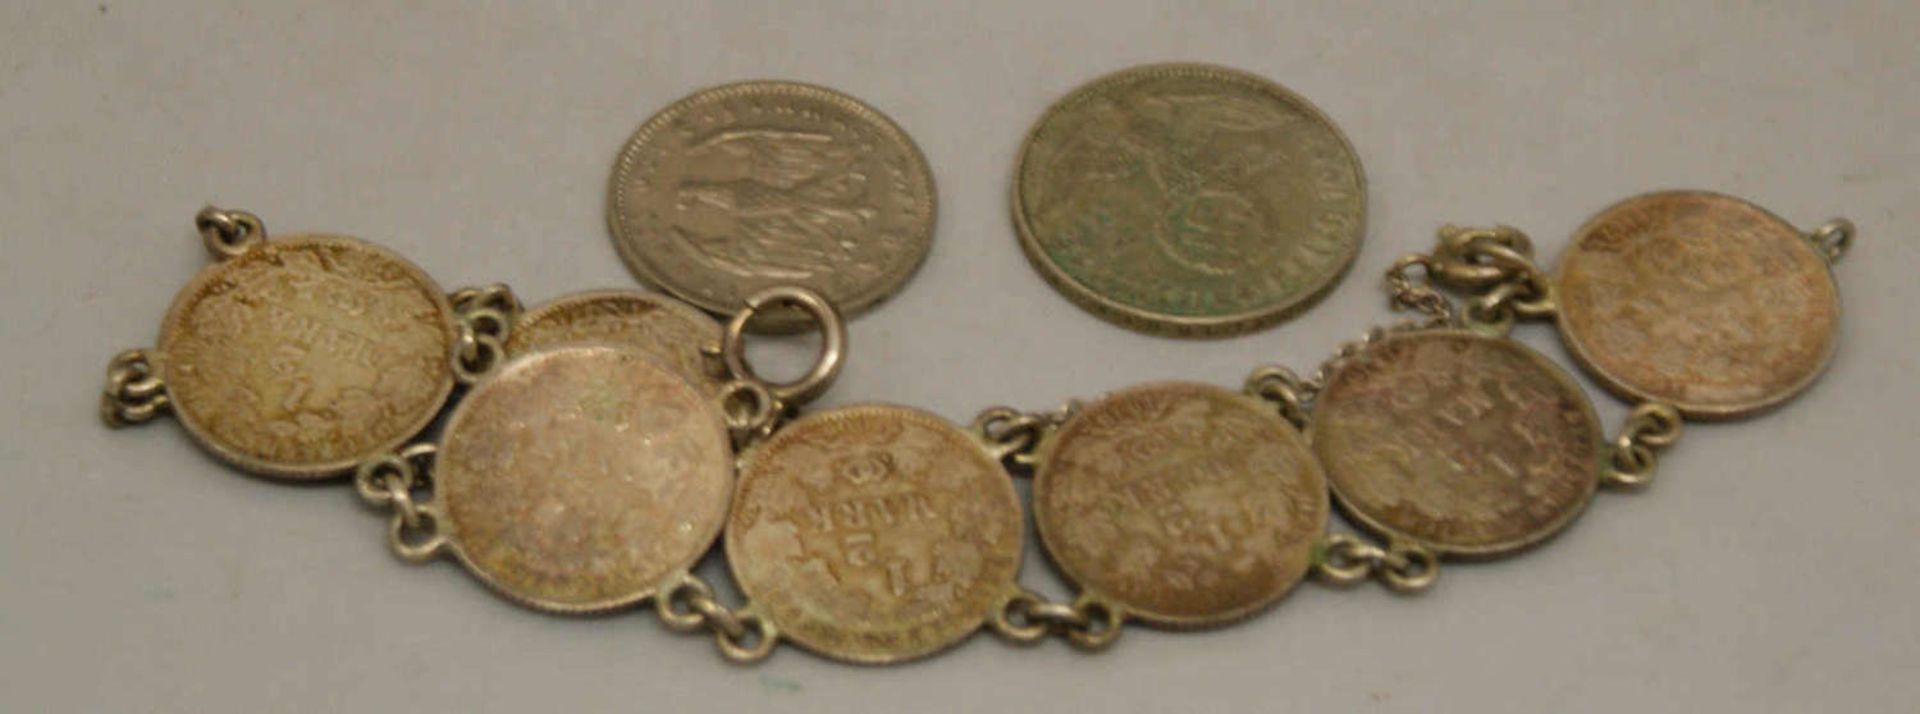 Münzarmband, Kaiserreich, bestehend aus 8x 1/2 Markstücken, Silber, gelötet. Mit Sicherheitskette.